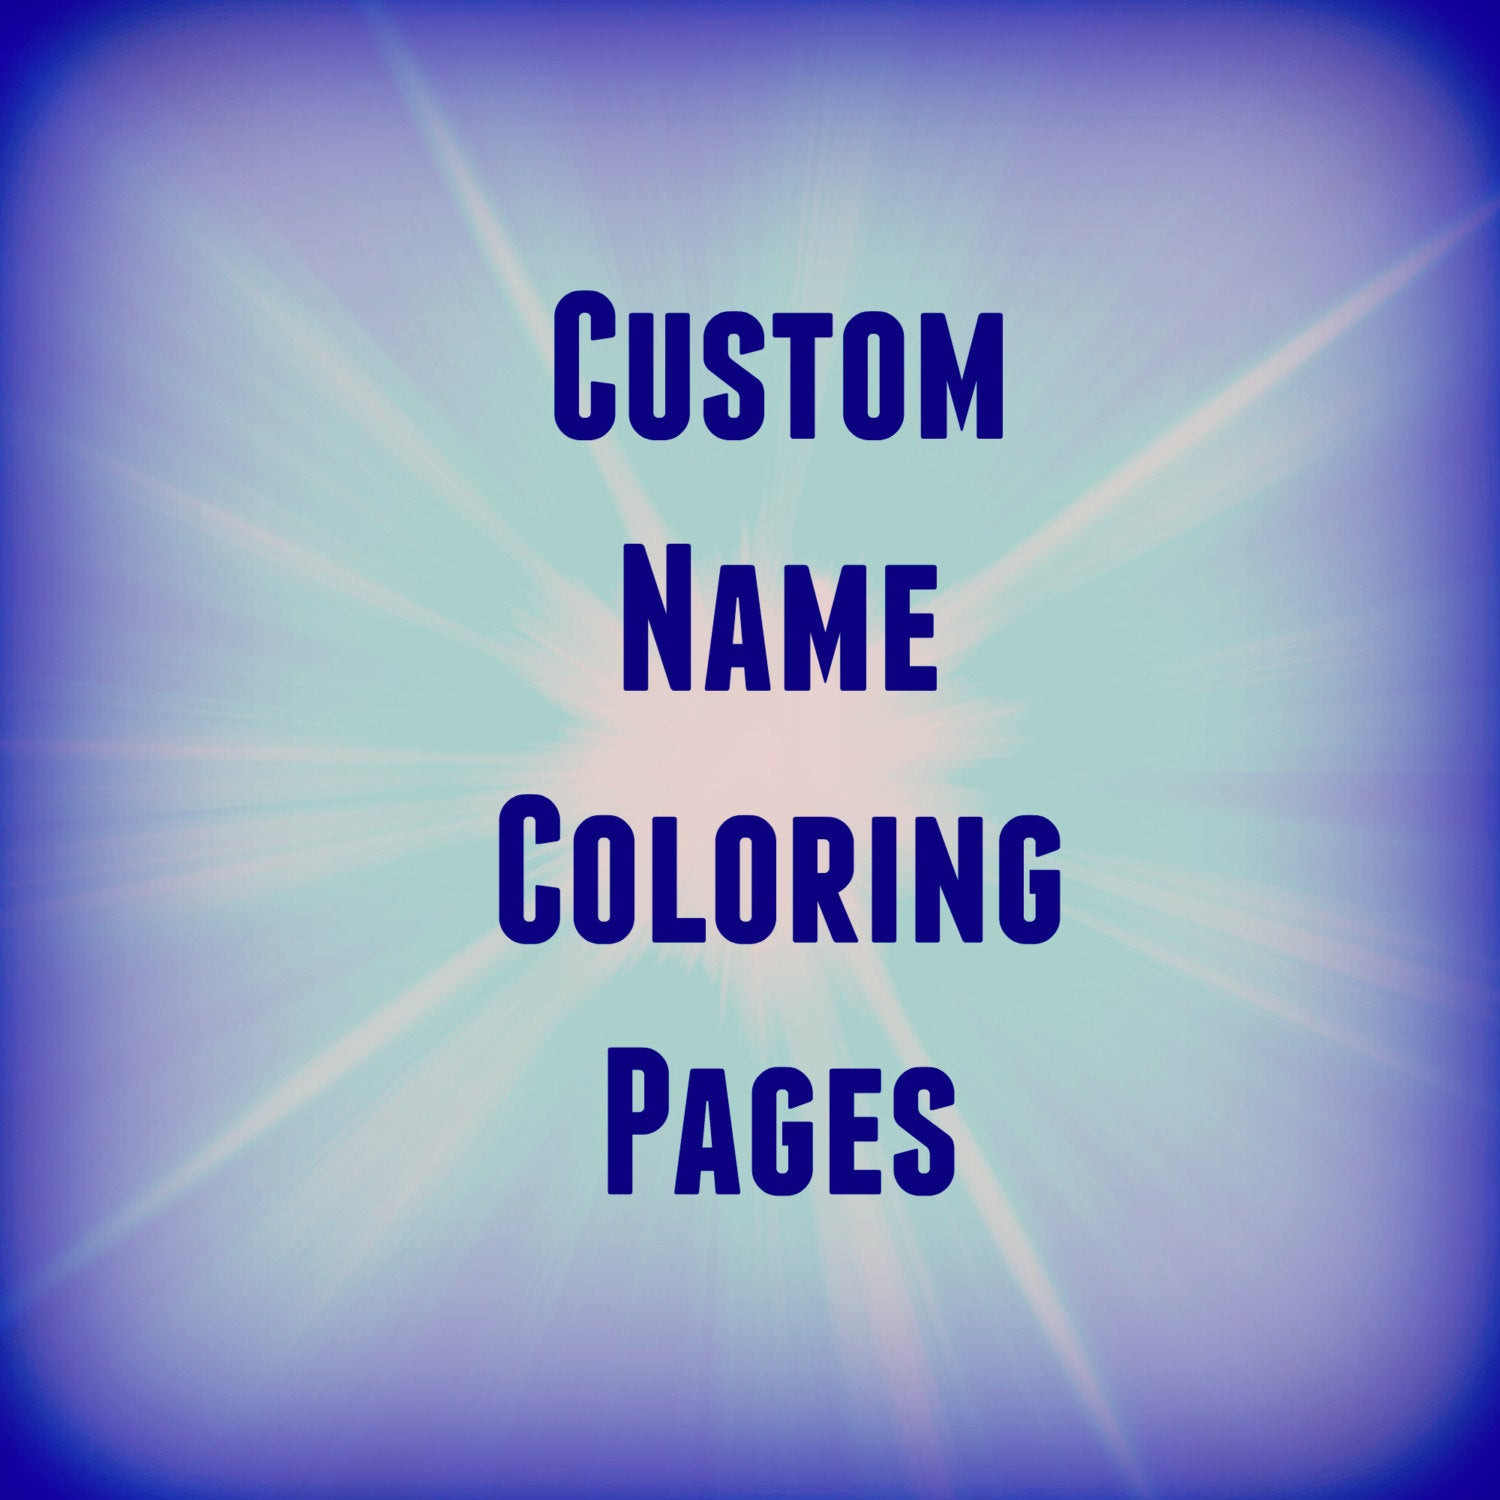 Printable Name Coloring Pages
 31 Printable Name Coloring Pages Color Your Name Custom